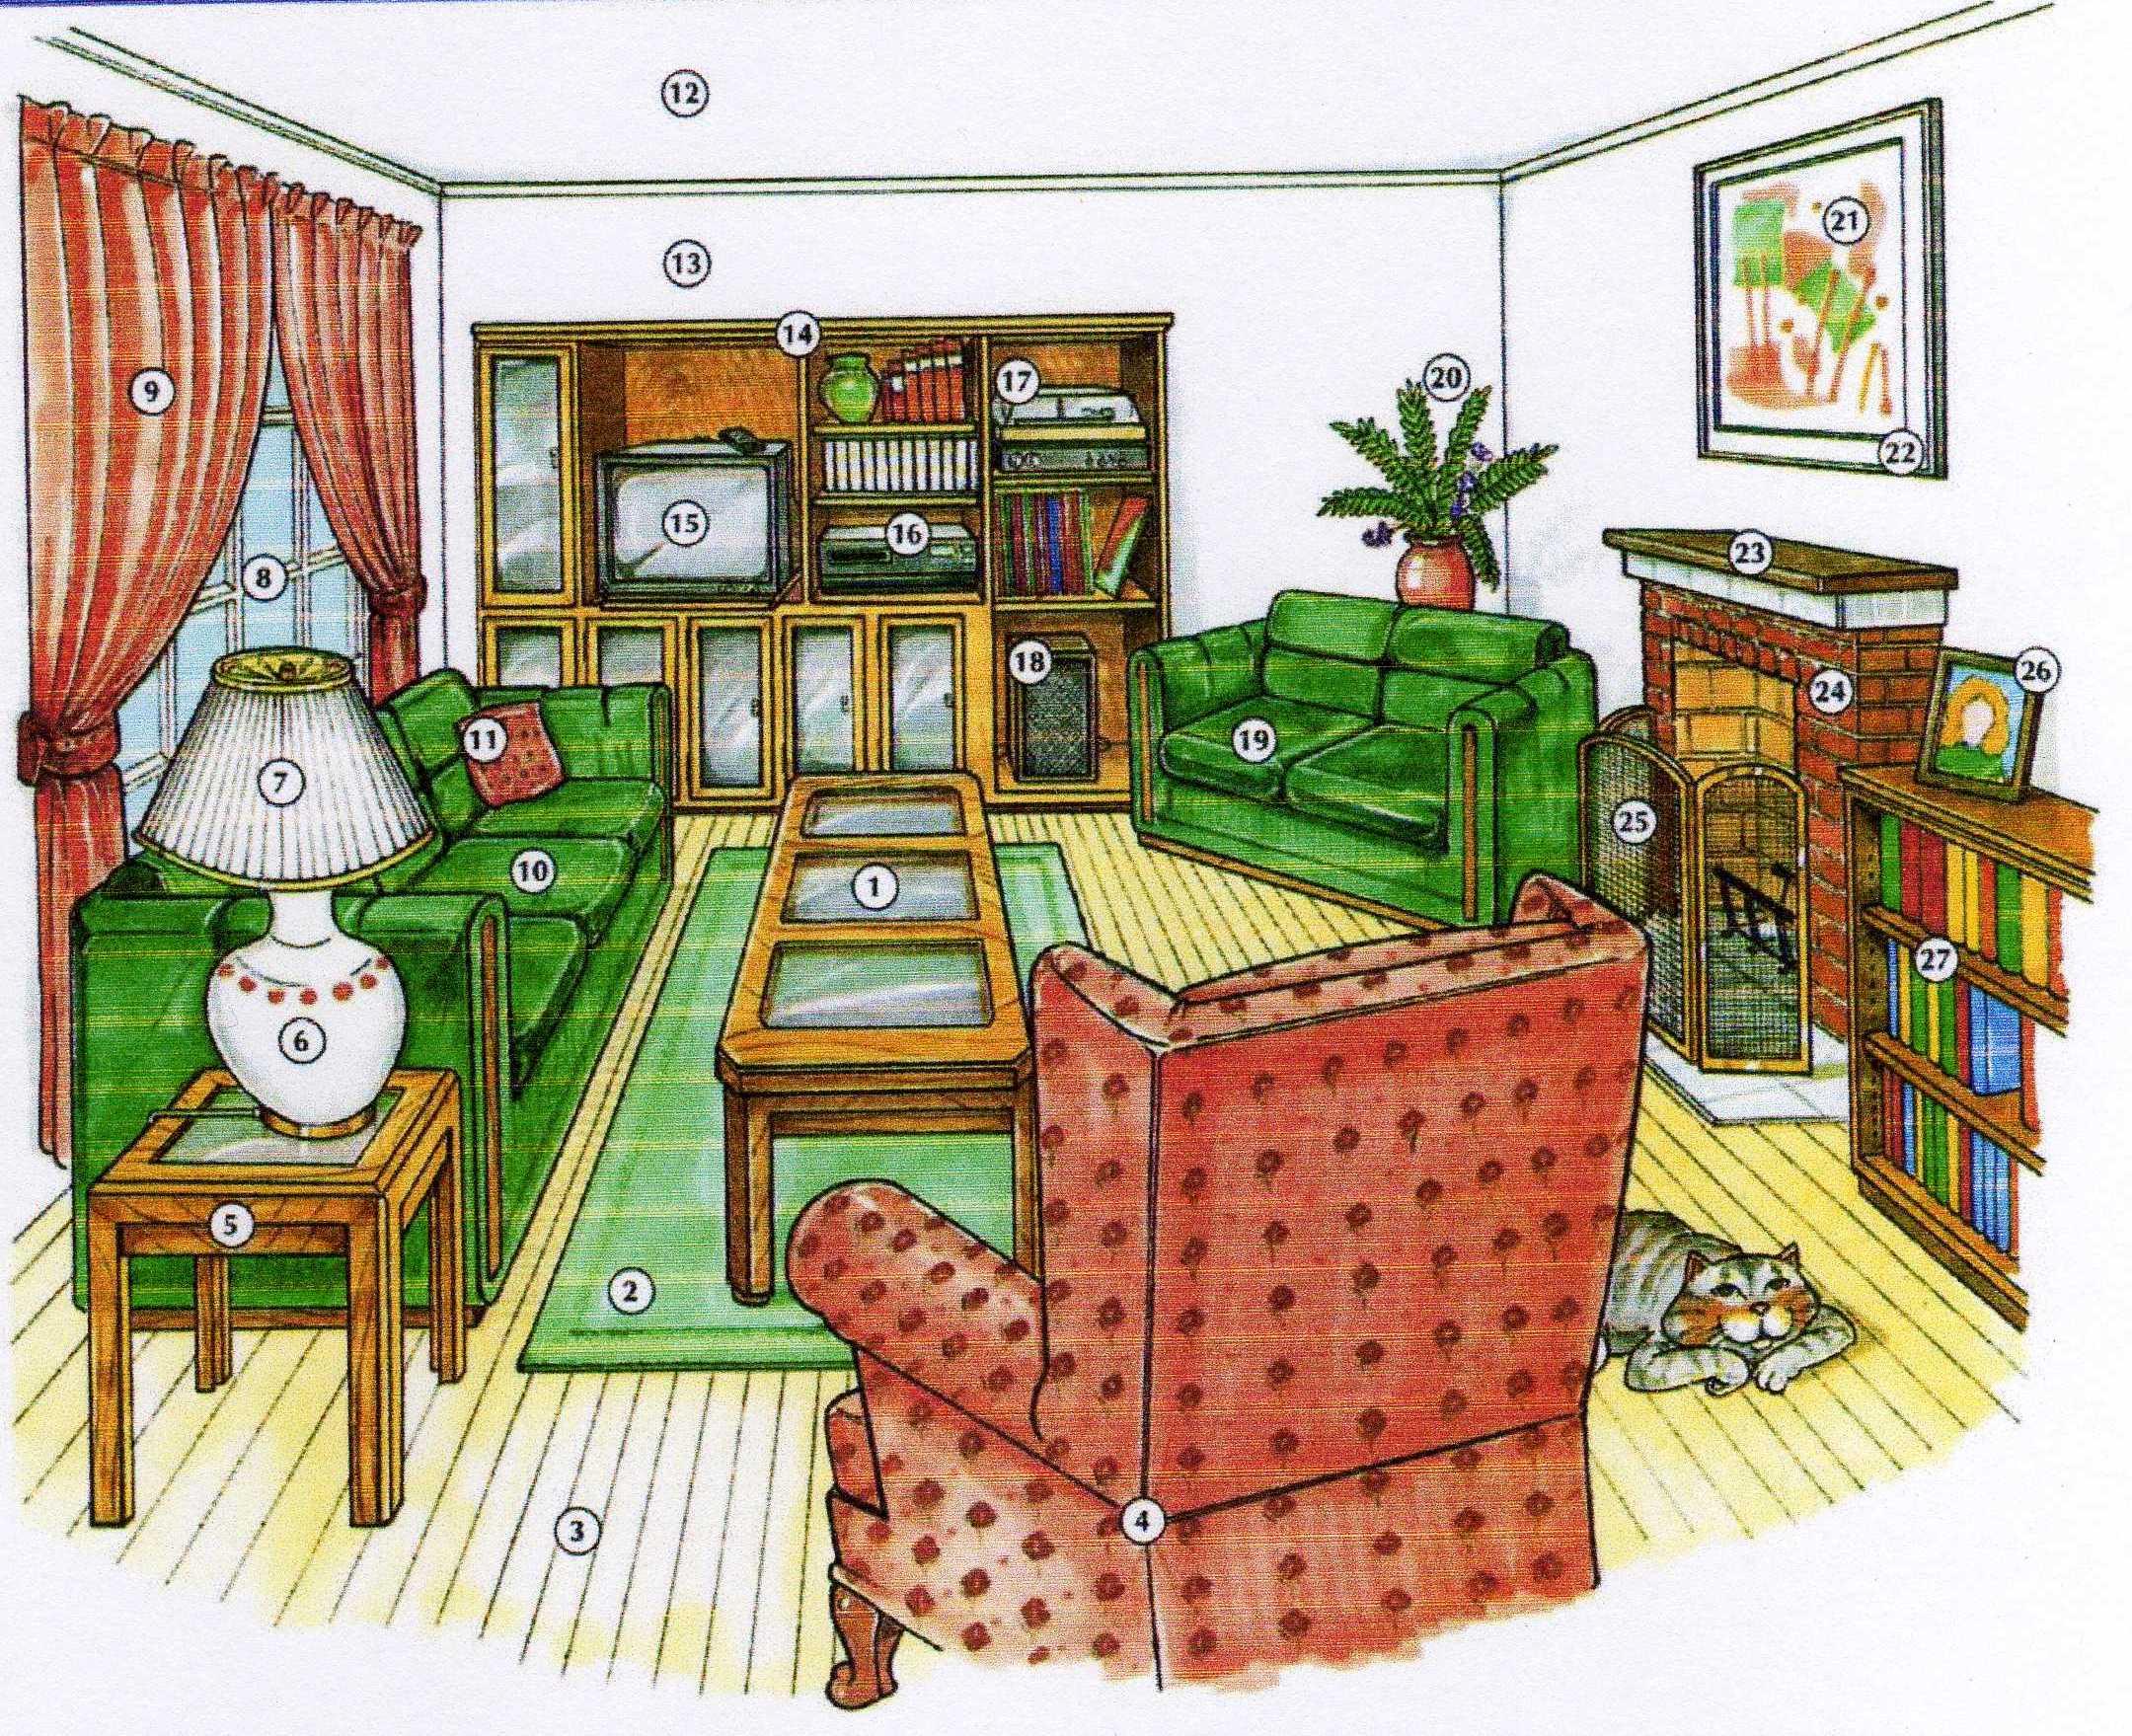 Английский язык тема комната. Комнаты на английском. Комната иллюстрация. Картинки комнаты для описания на английском языке. Нарисованная детская комната.